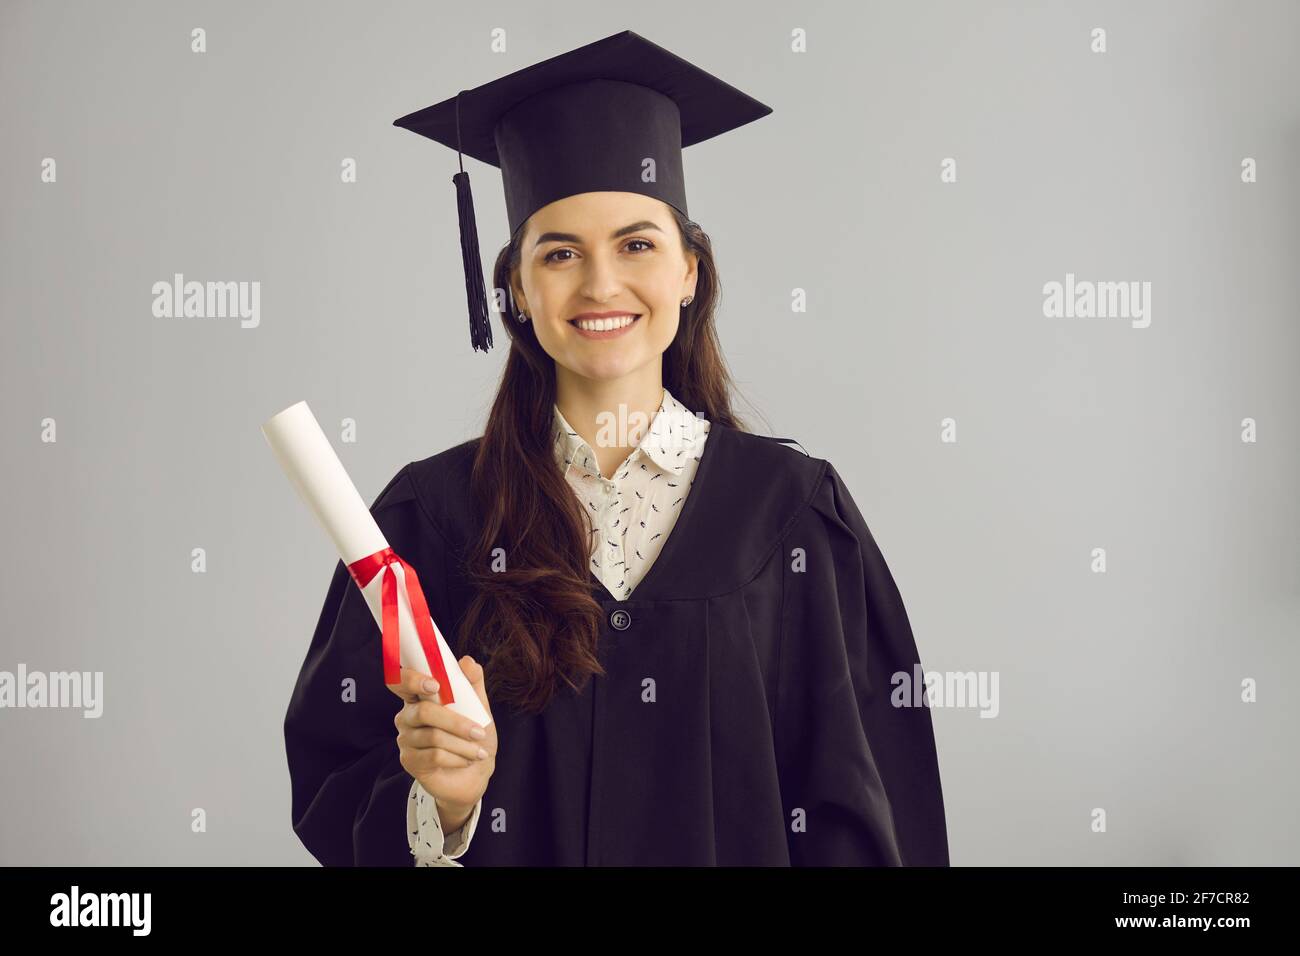 Studentin in akademischem Kleid und Hut mit einem Hochschul- oder Akademiezertifikat. Stockfoto